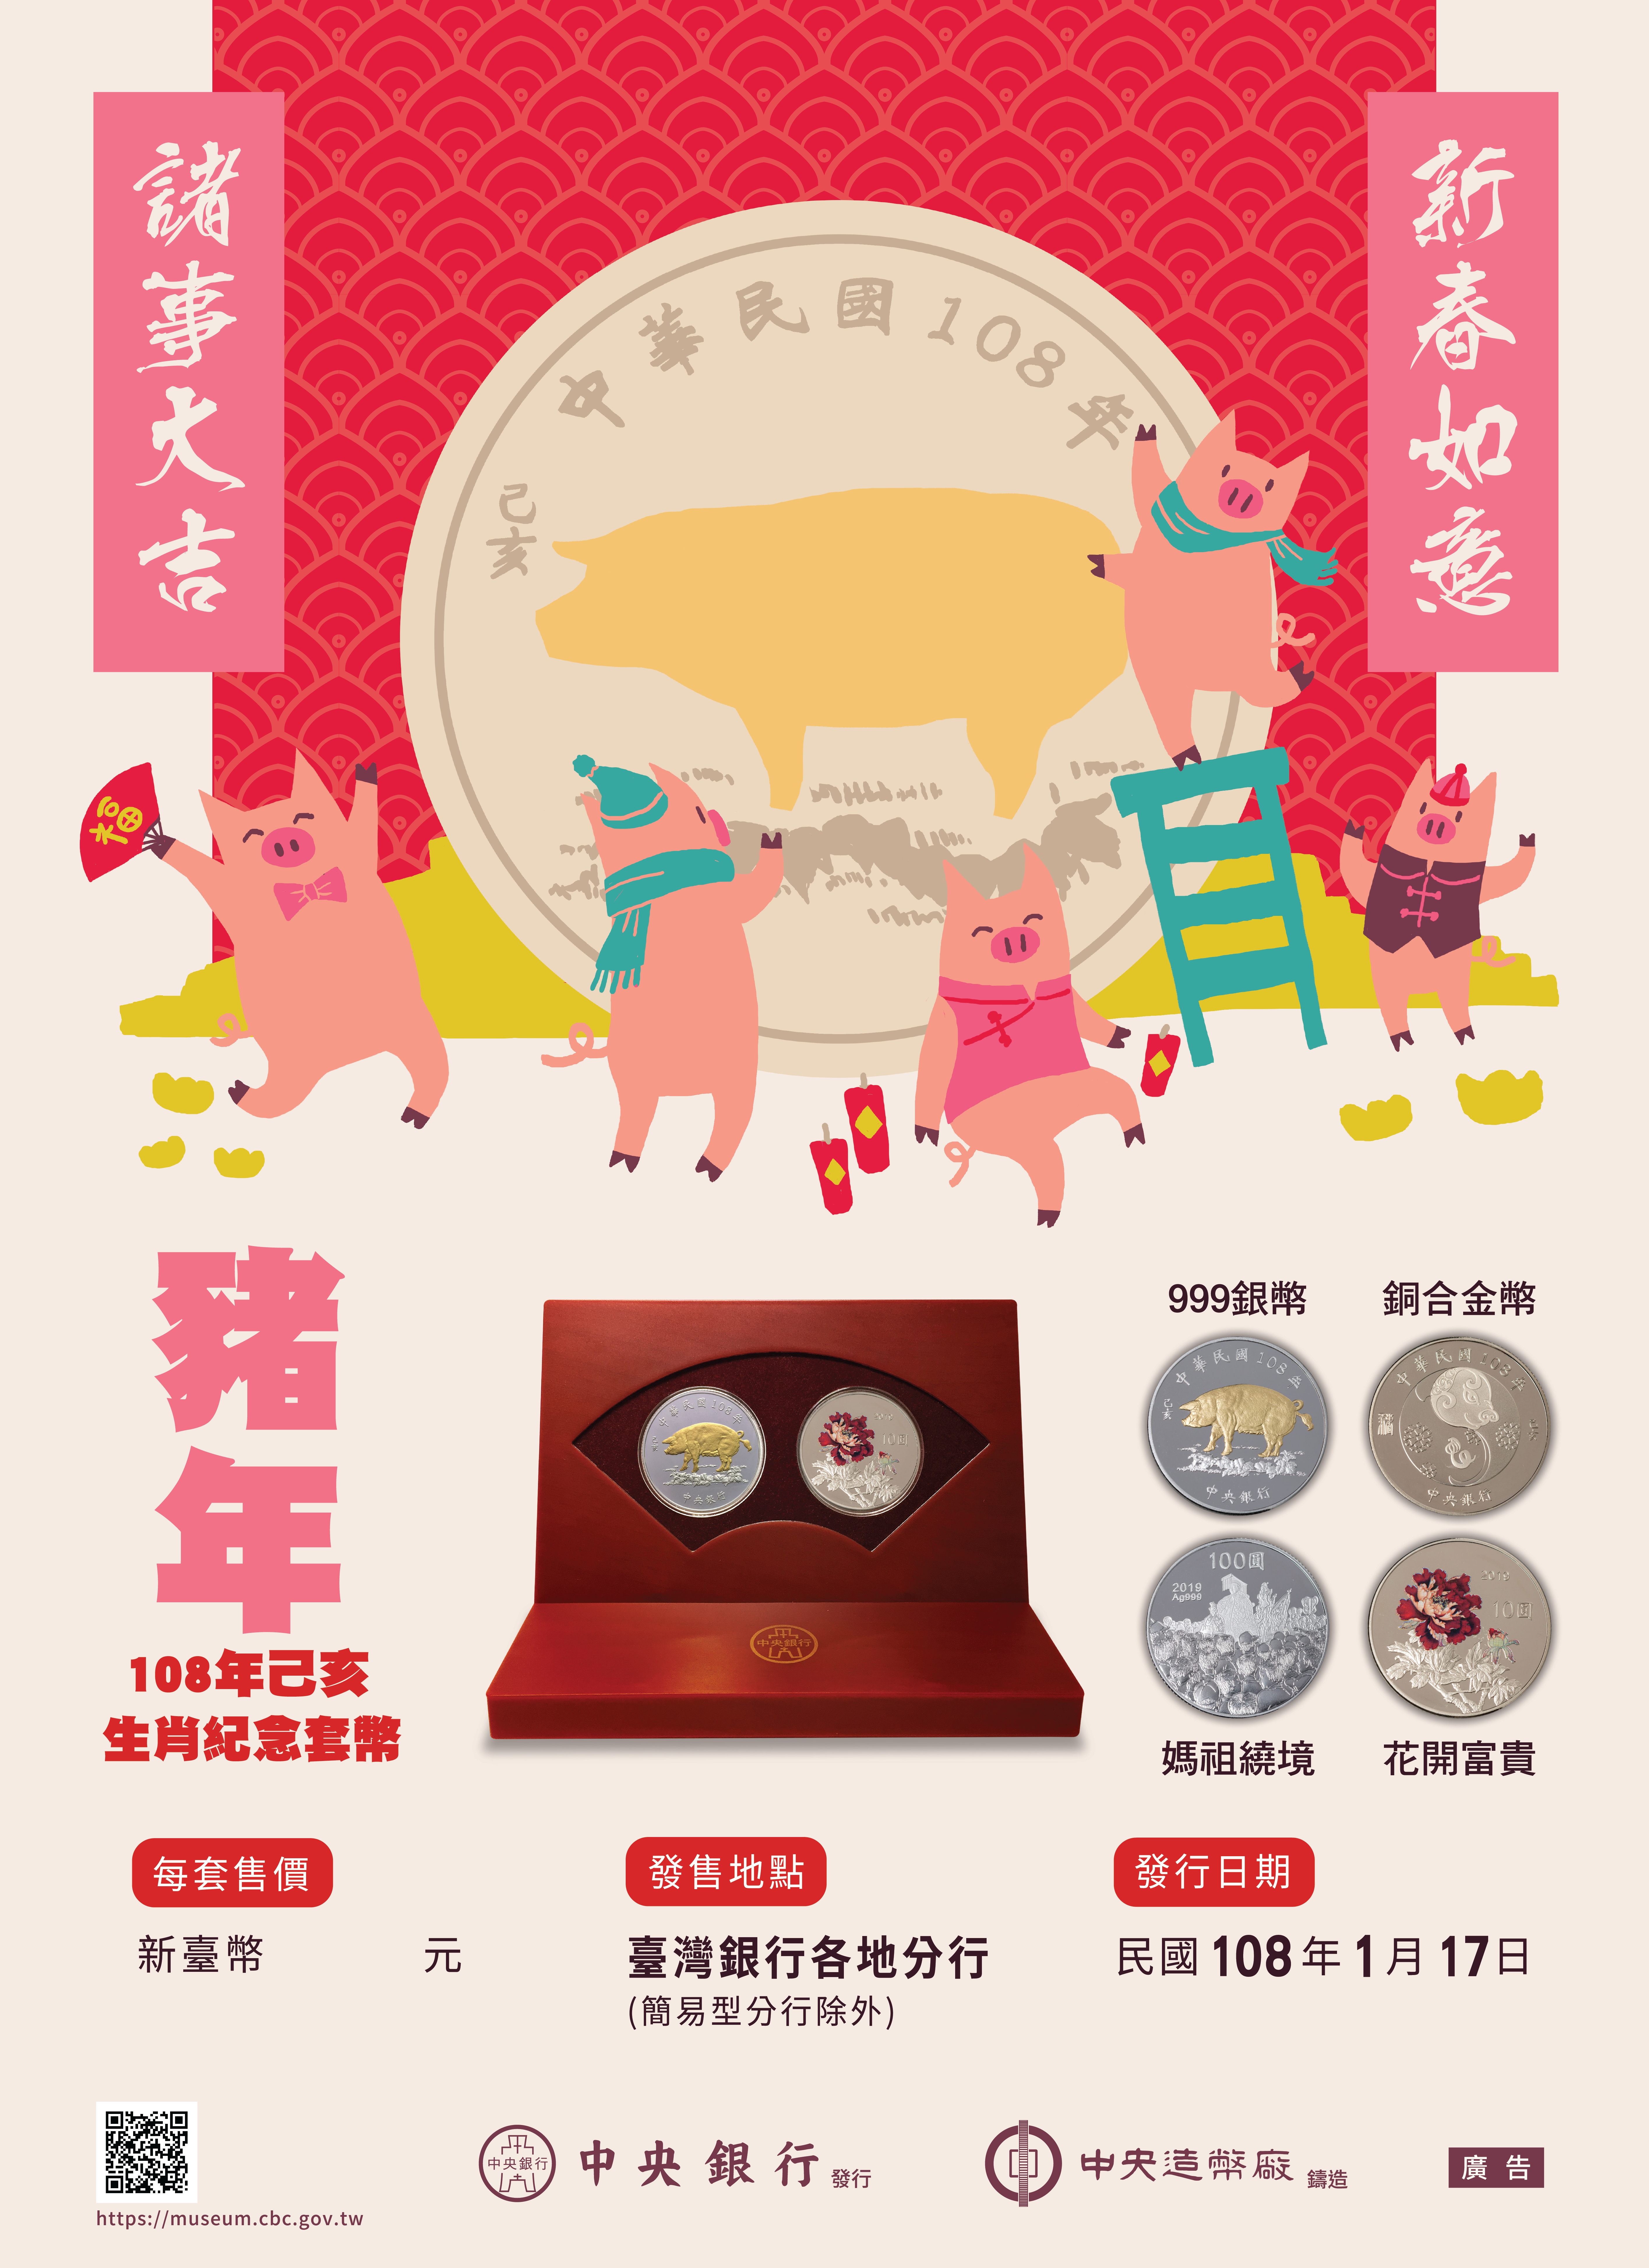 中央銀行發行「己亥豬年生肖紀念套幣」宣傳海報